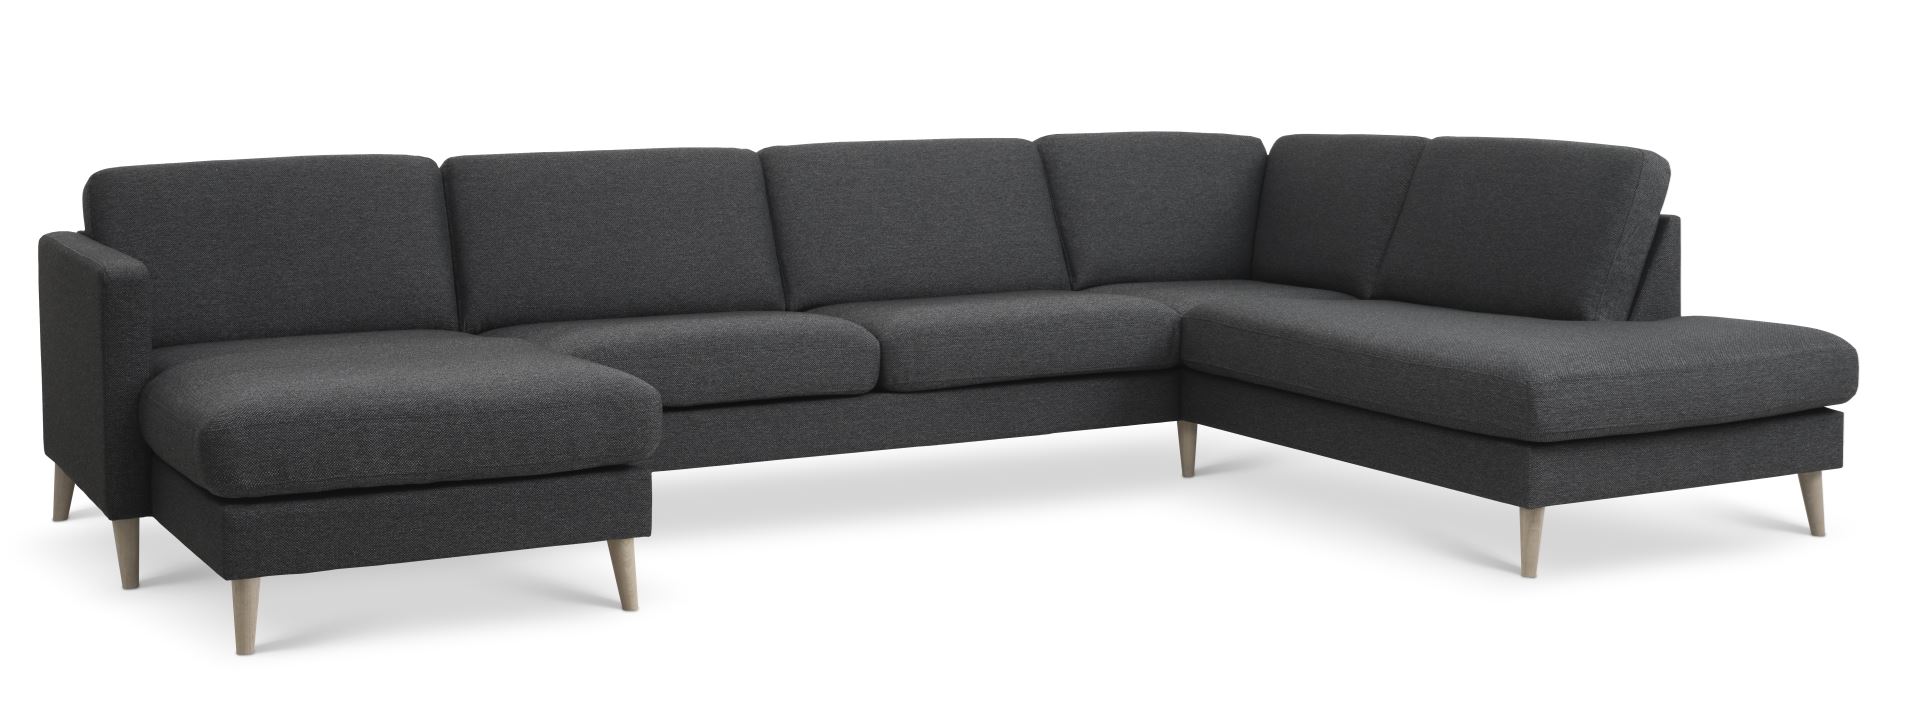 Ask sæt 55 U OE sofa, m. højre chaiselong - antracitgrå polyester stof og natur træ